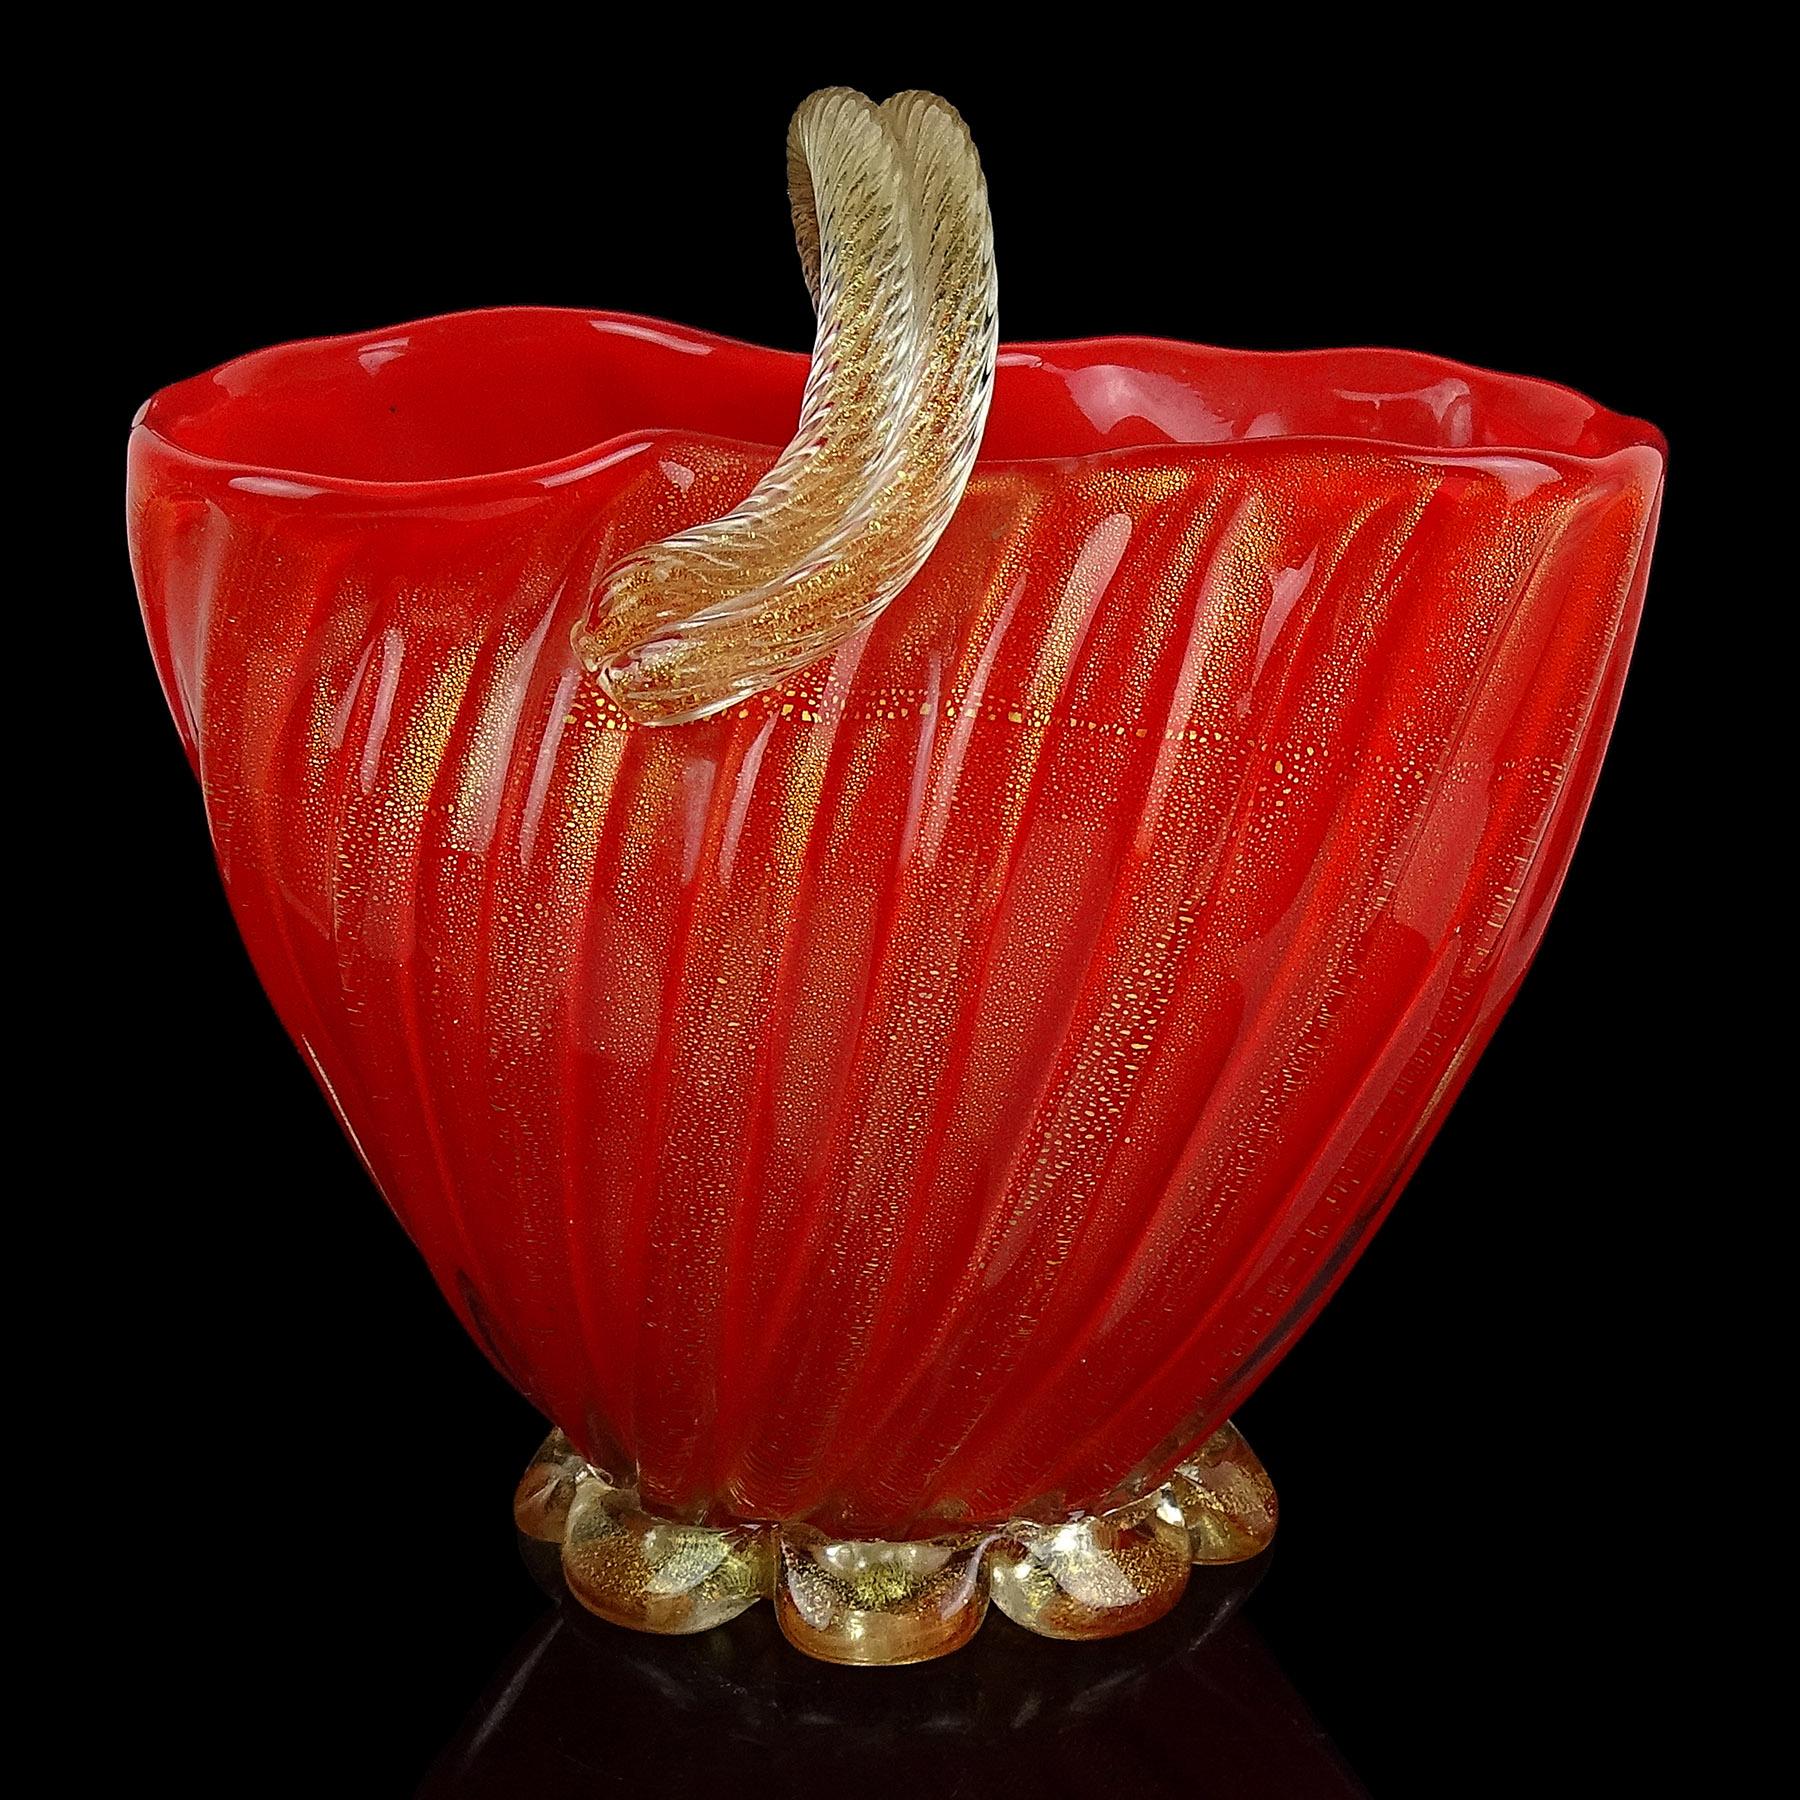 Seltene und schöne, große Vintage Murano mundgeblasen korallenrot und Goldflecken italienische Kunst Glas Blumenkorb / Vase. Dokumentiert für den Designer Archimede Seguso, ca. 1952. Ein ähnliches Stück (in Gelb) wurde von mir fotografiert und in